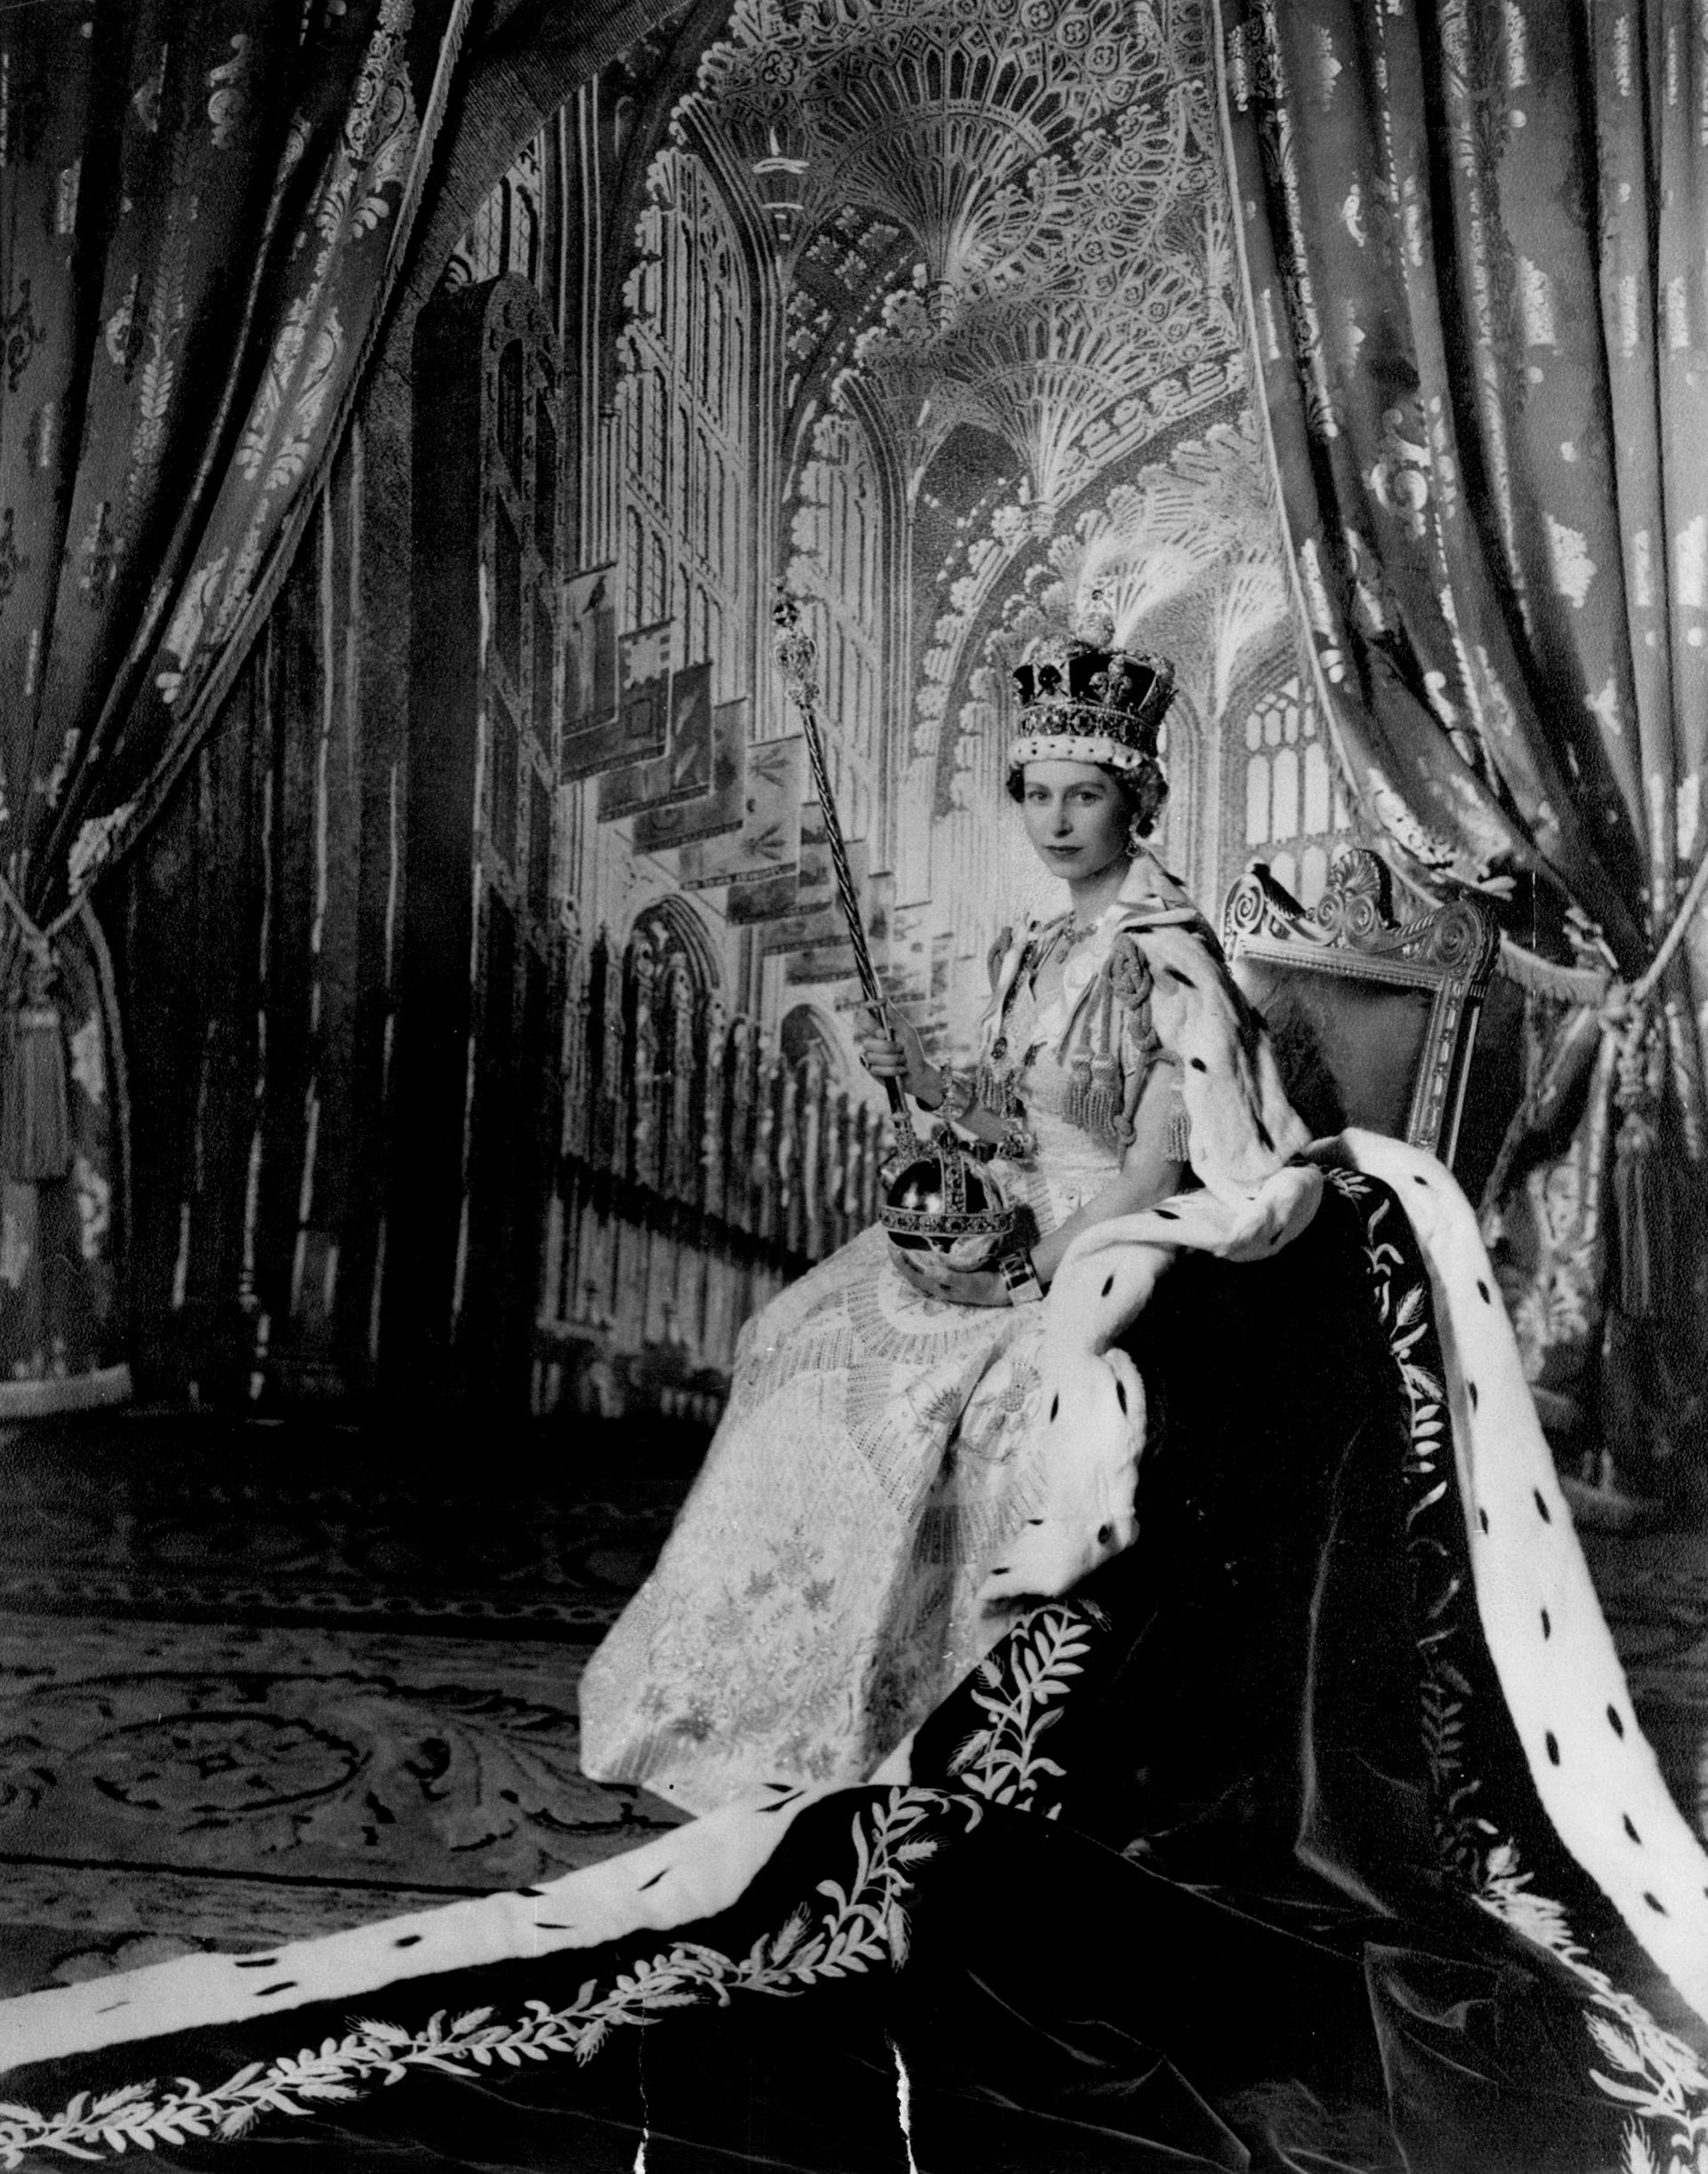 La reina Isabel II lució la corona imperial de San Eduardo, que data de 1661, es de oro macizo, pesa dos kilos y mide 31,5 centímetros. Está adornada con zafiros turmalinas, topacios, amatistas y perlas. La monarca posa con el cetro con la cruz y el orbe, una esfera de oro con gemas, que simboliza su rol de defensora de la fe (Zuma Press/The Grosby Group)